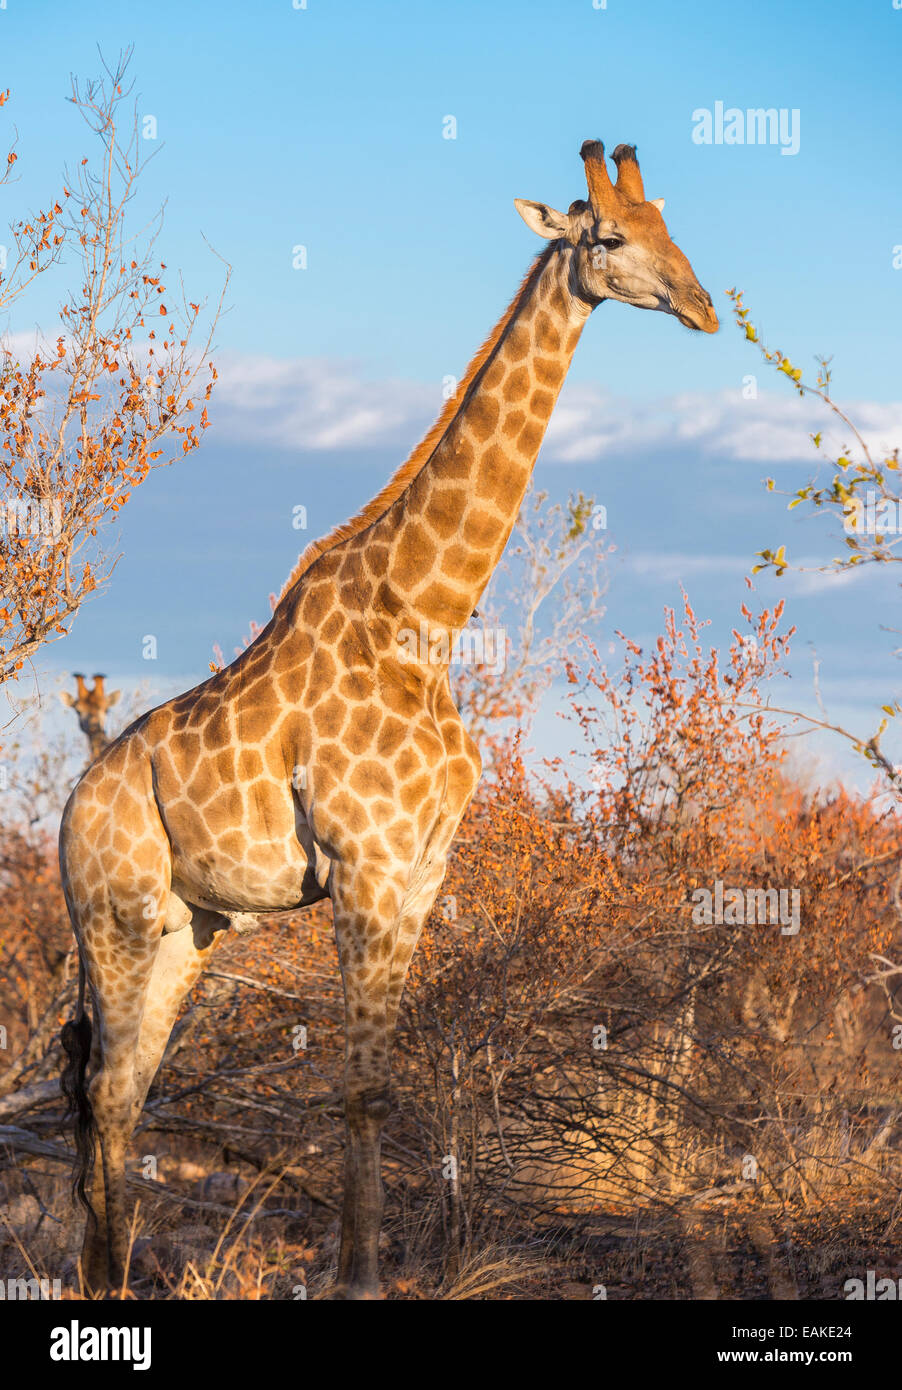 Parco Nazionale di Kruger, SUD AFRICA - Giraffe Foto Stock